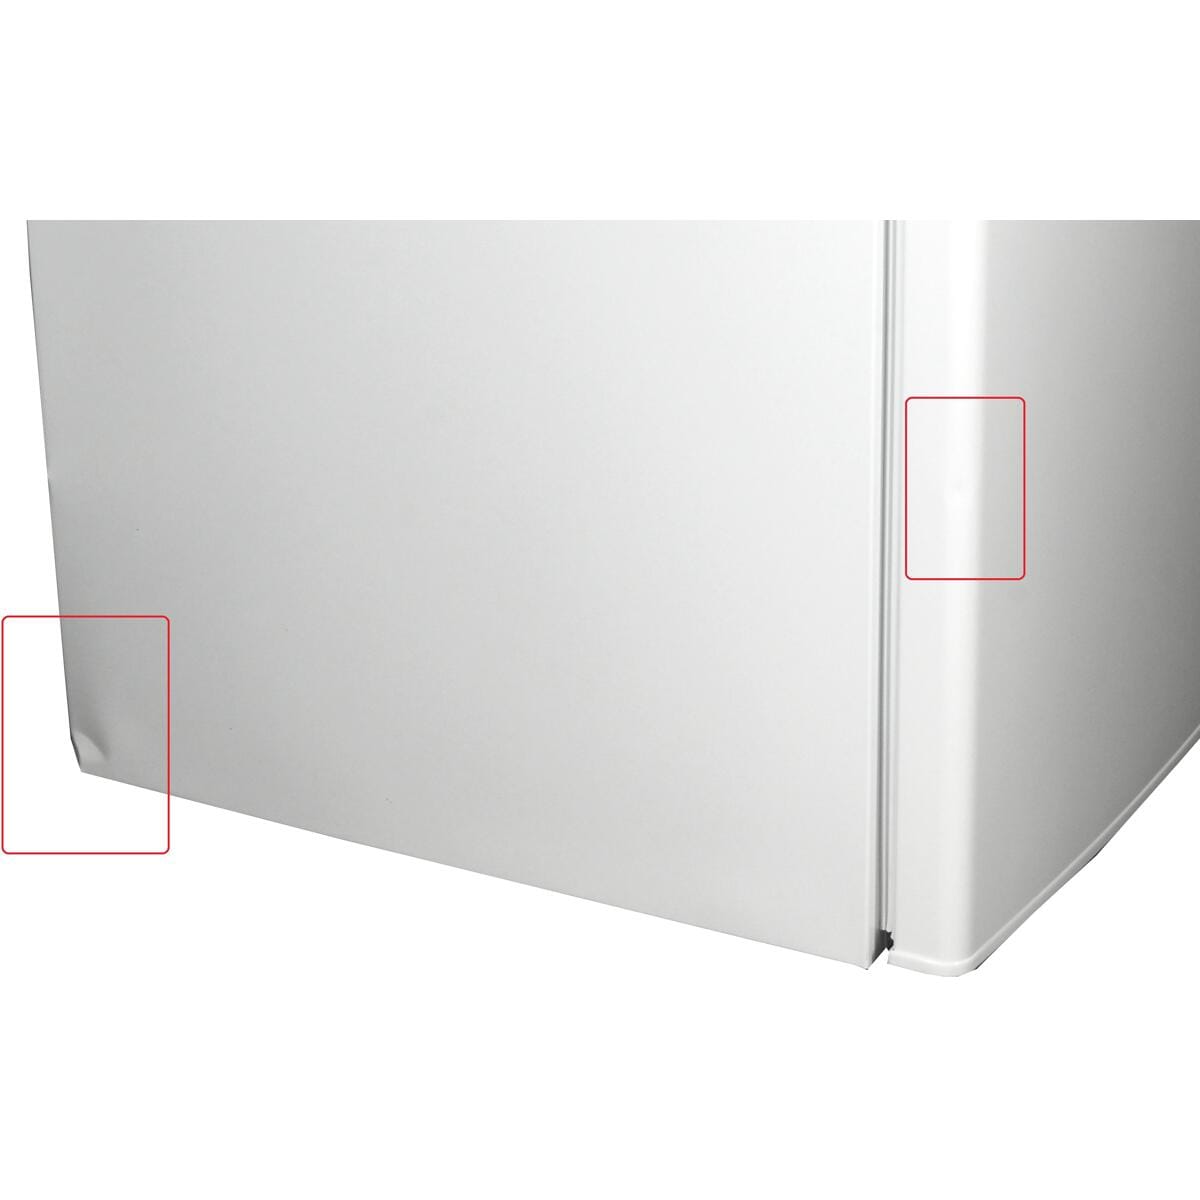 Exquisit KS16-4-E-040E Stand-Kühlschrank 55cm 109 weiß Liter breit Gefrierfach mit LED-Beleuchtung